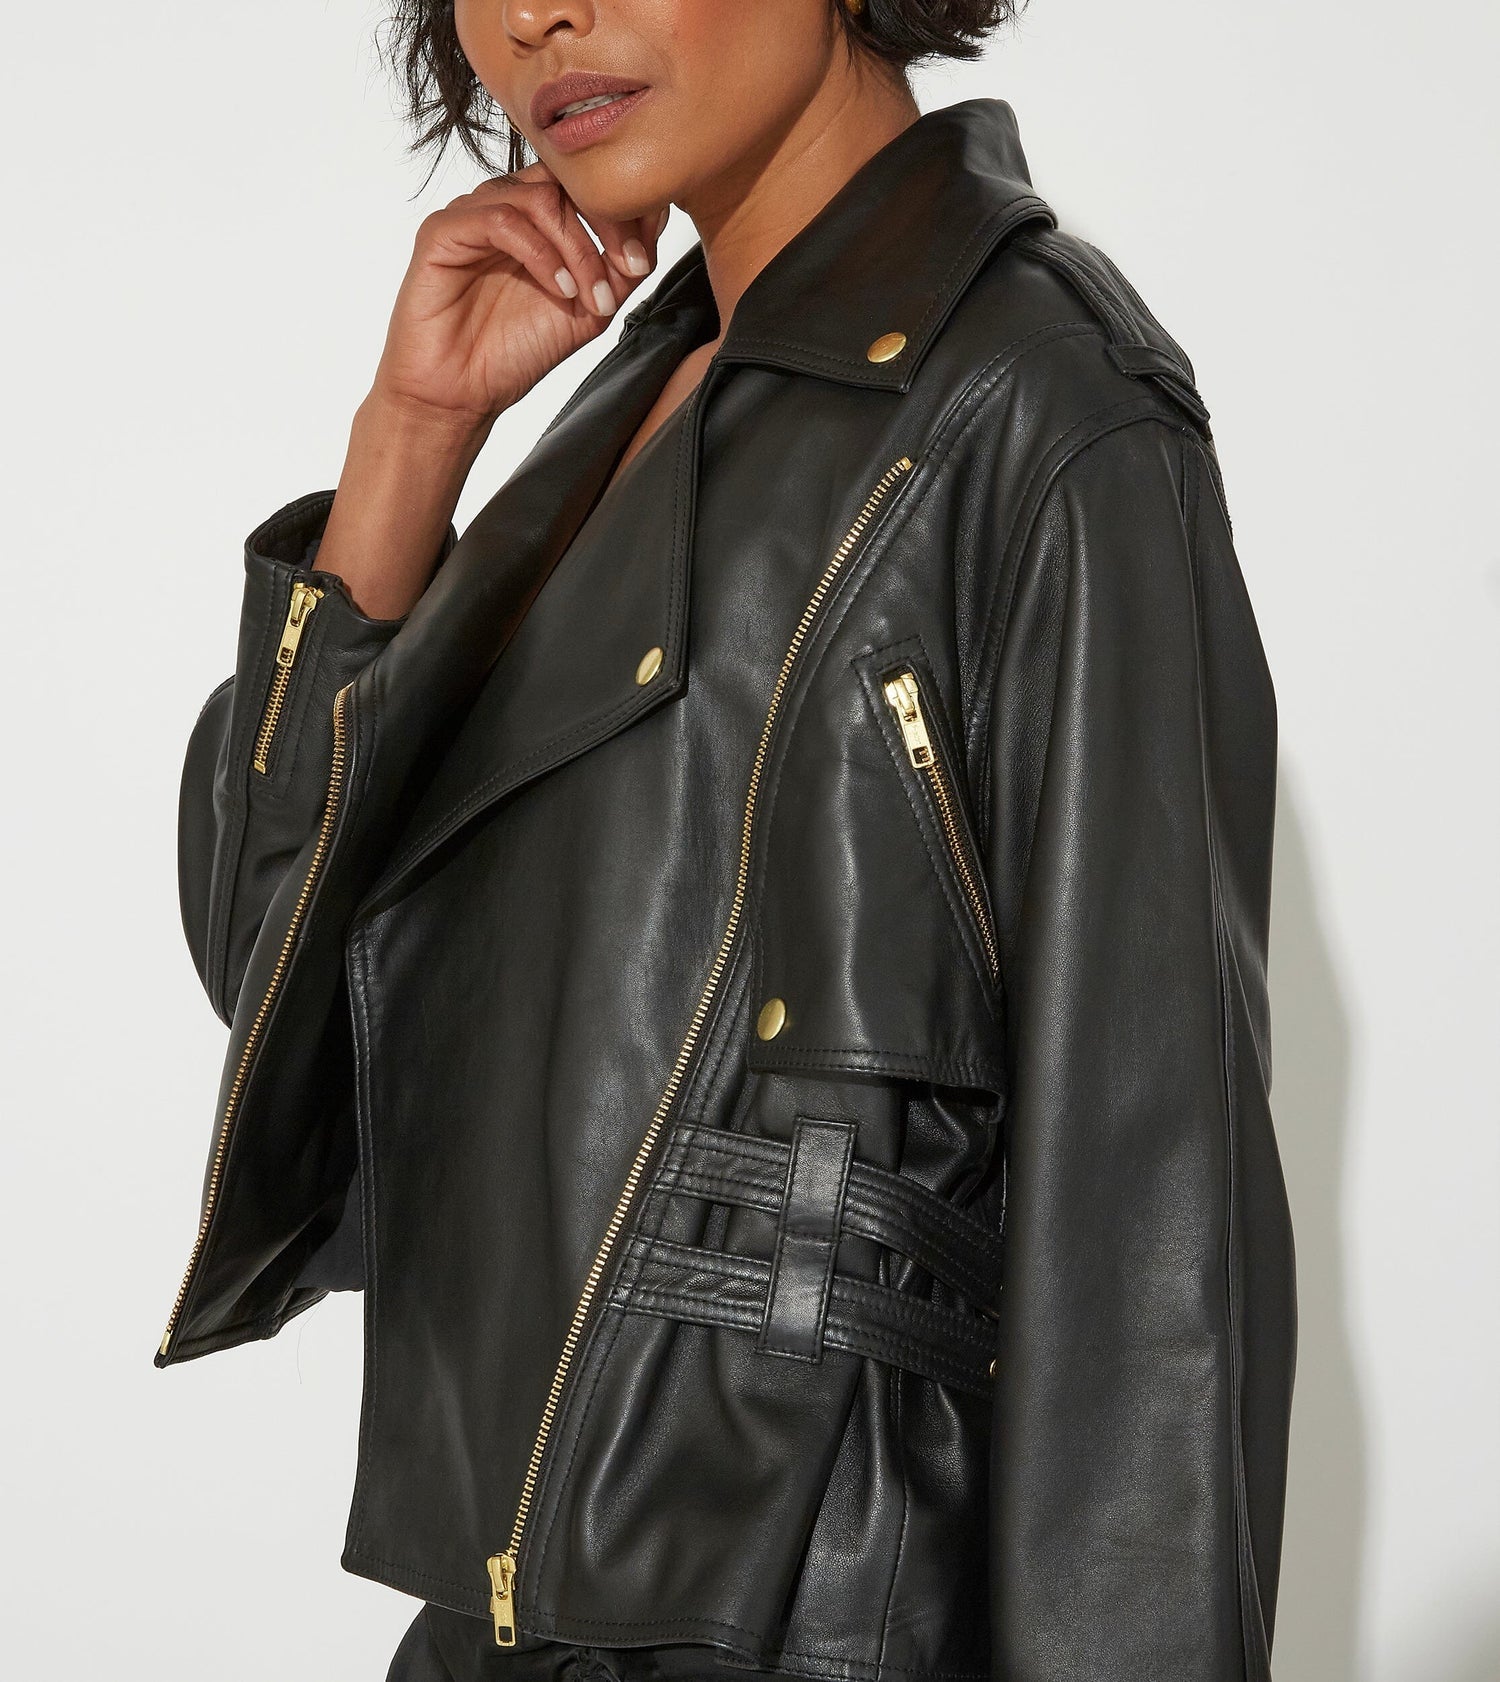 Cleobella Maeve Leather Jacket